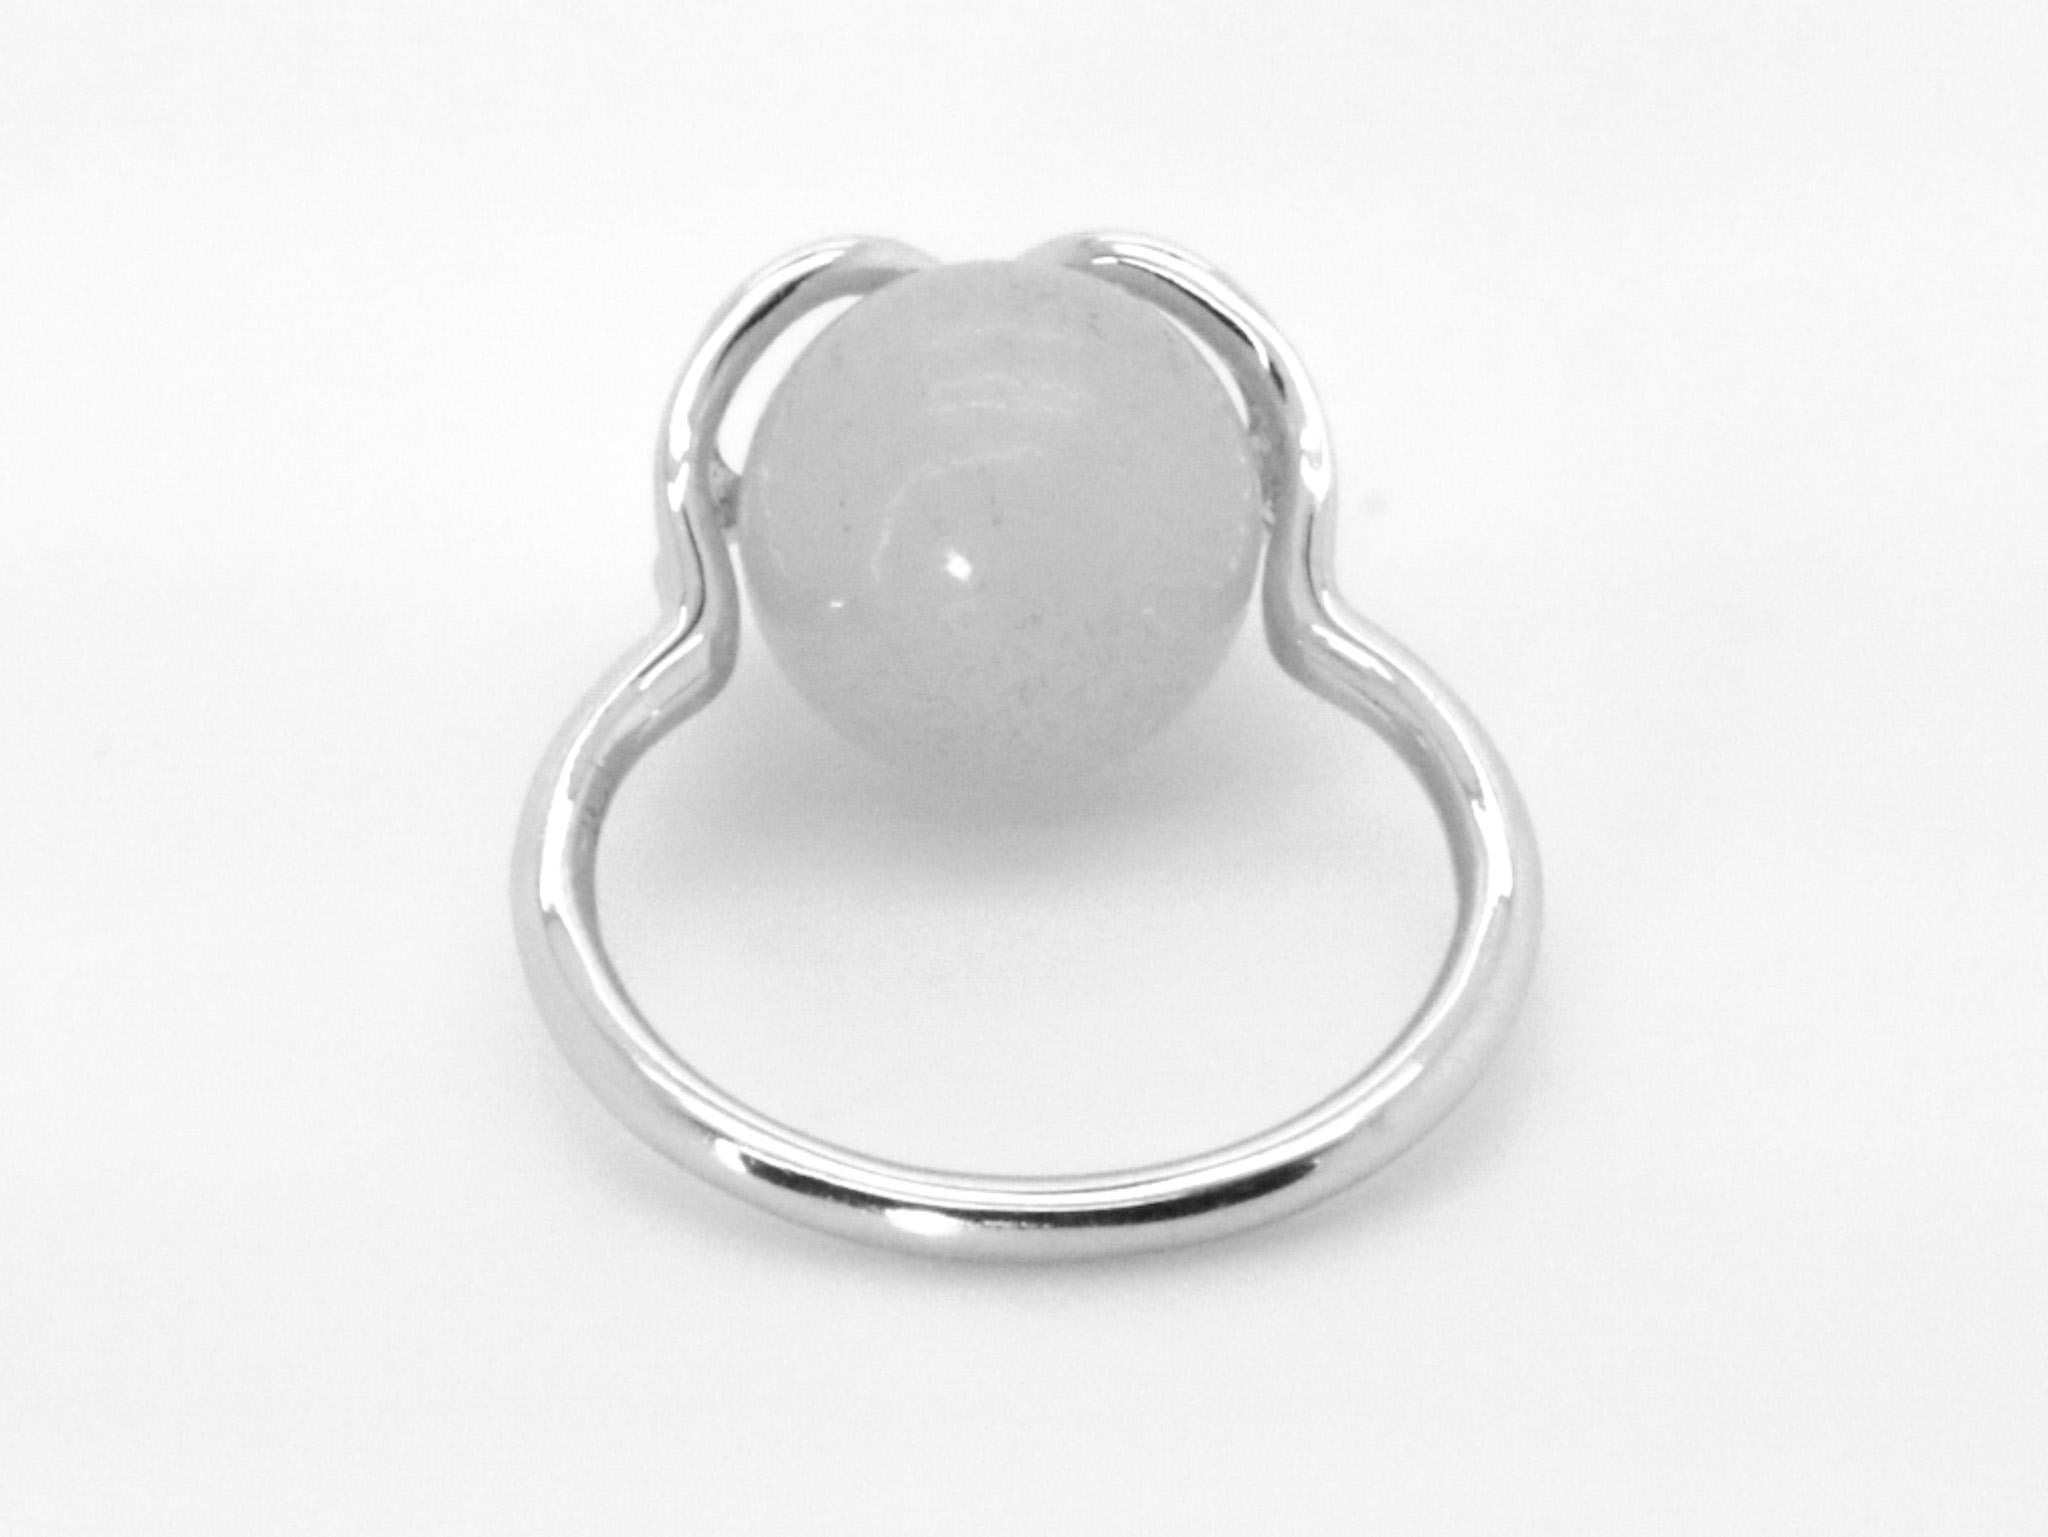 Der Infinite Magic of Gems-Cocktailring ist mit dem Unendlichkeitssymbol gestaltet und mit einem  Weiße Jade, die Edelsteine sind austauschbar. Er ist mit einer halb durchbohrten weißen Jade im Kugelschliff von etwa 8,00 Karat und einem Durchmesser